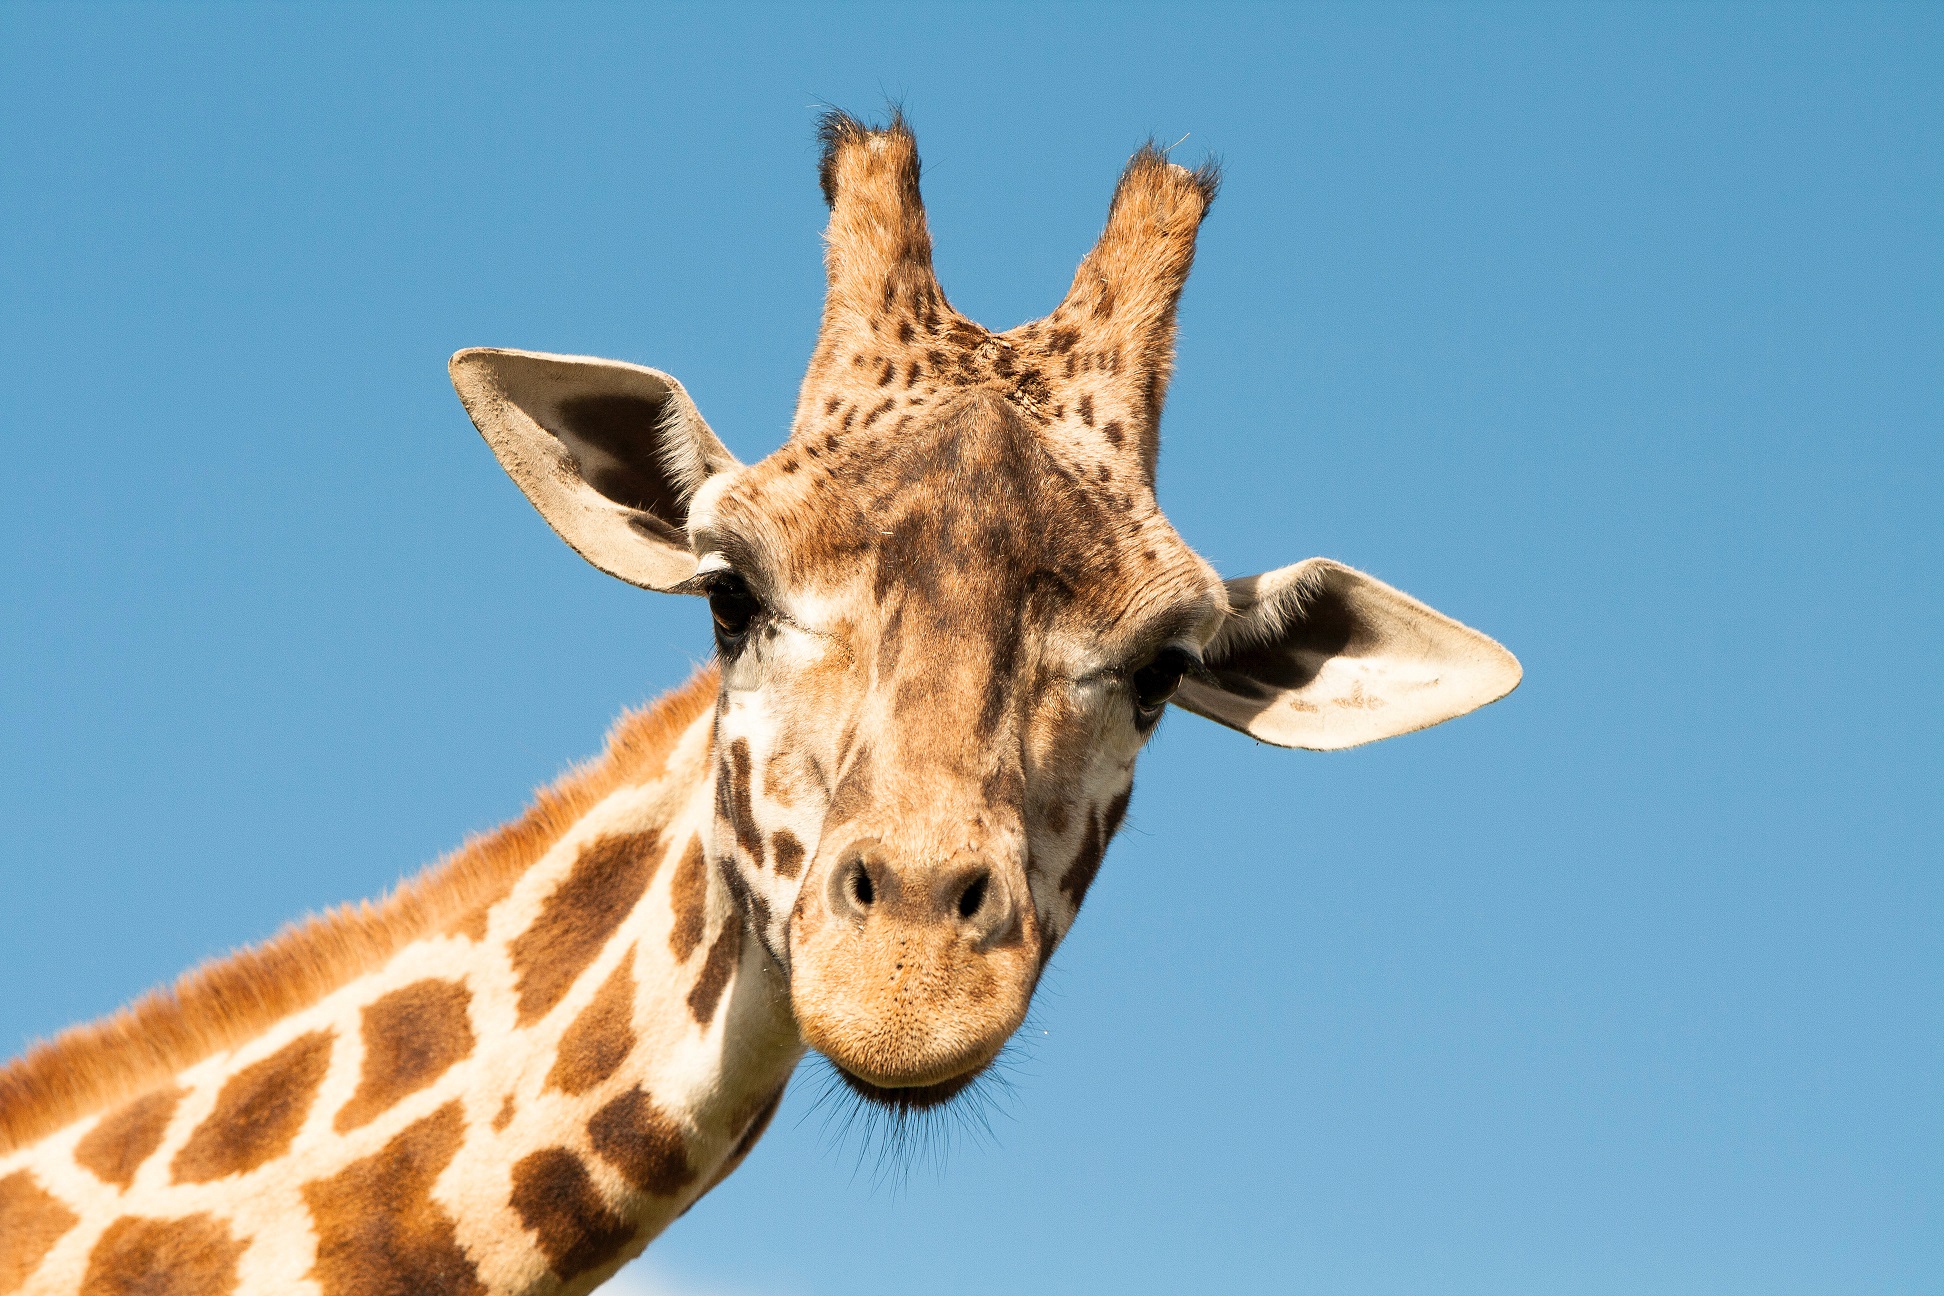 La girafe est le plus haut des animaux terrestres. © sivanadar, Shutterstock